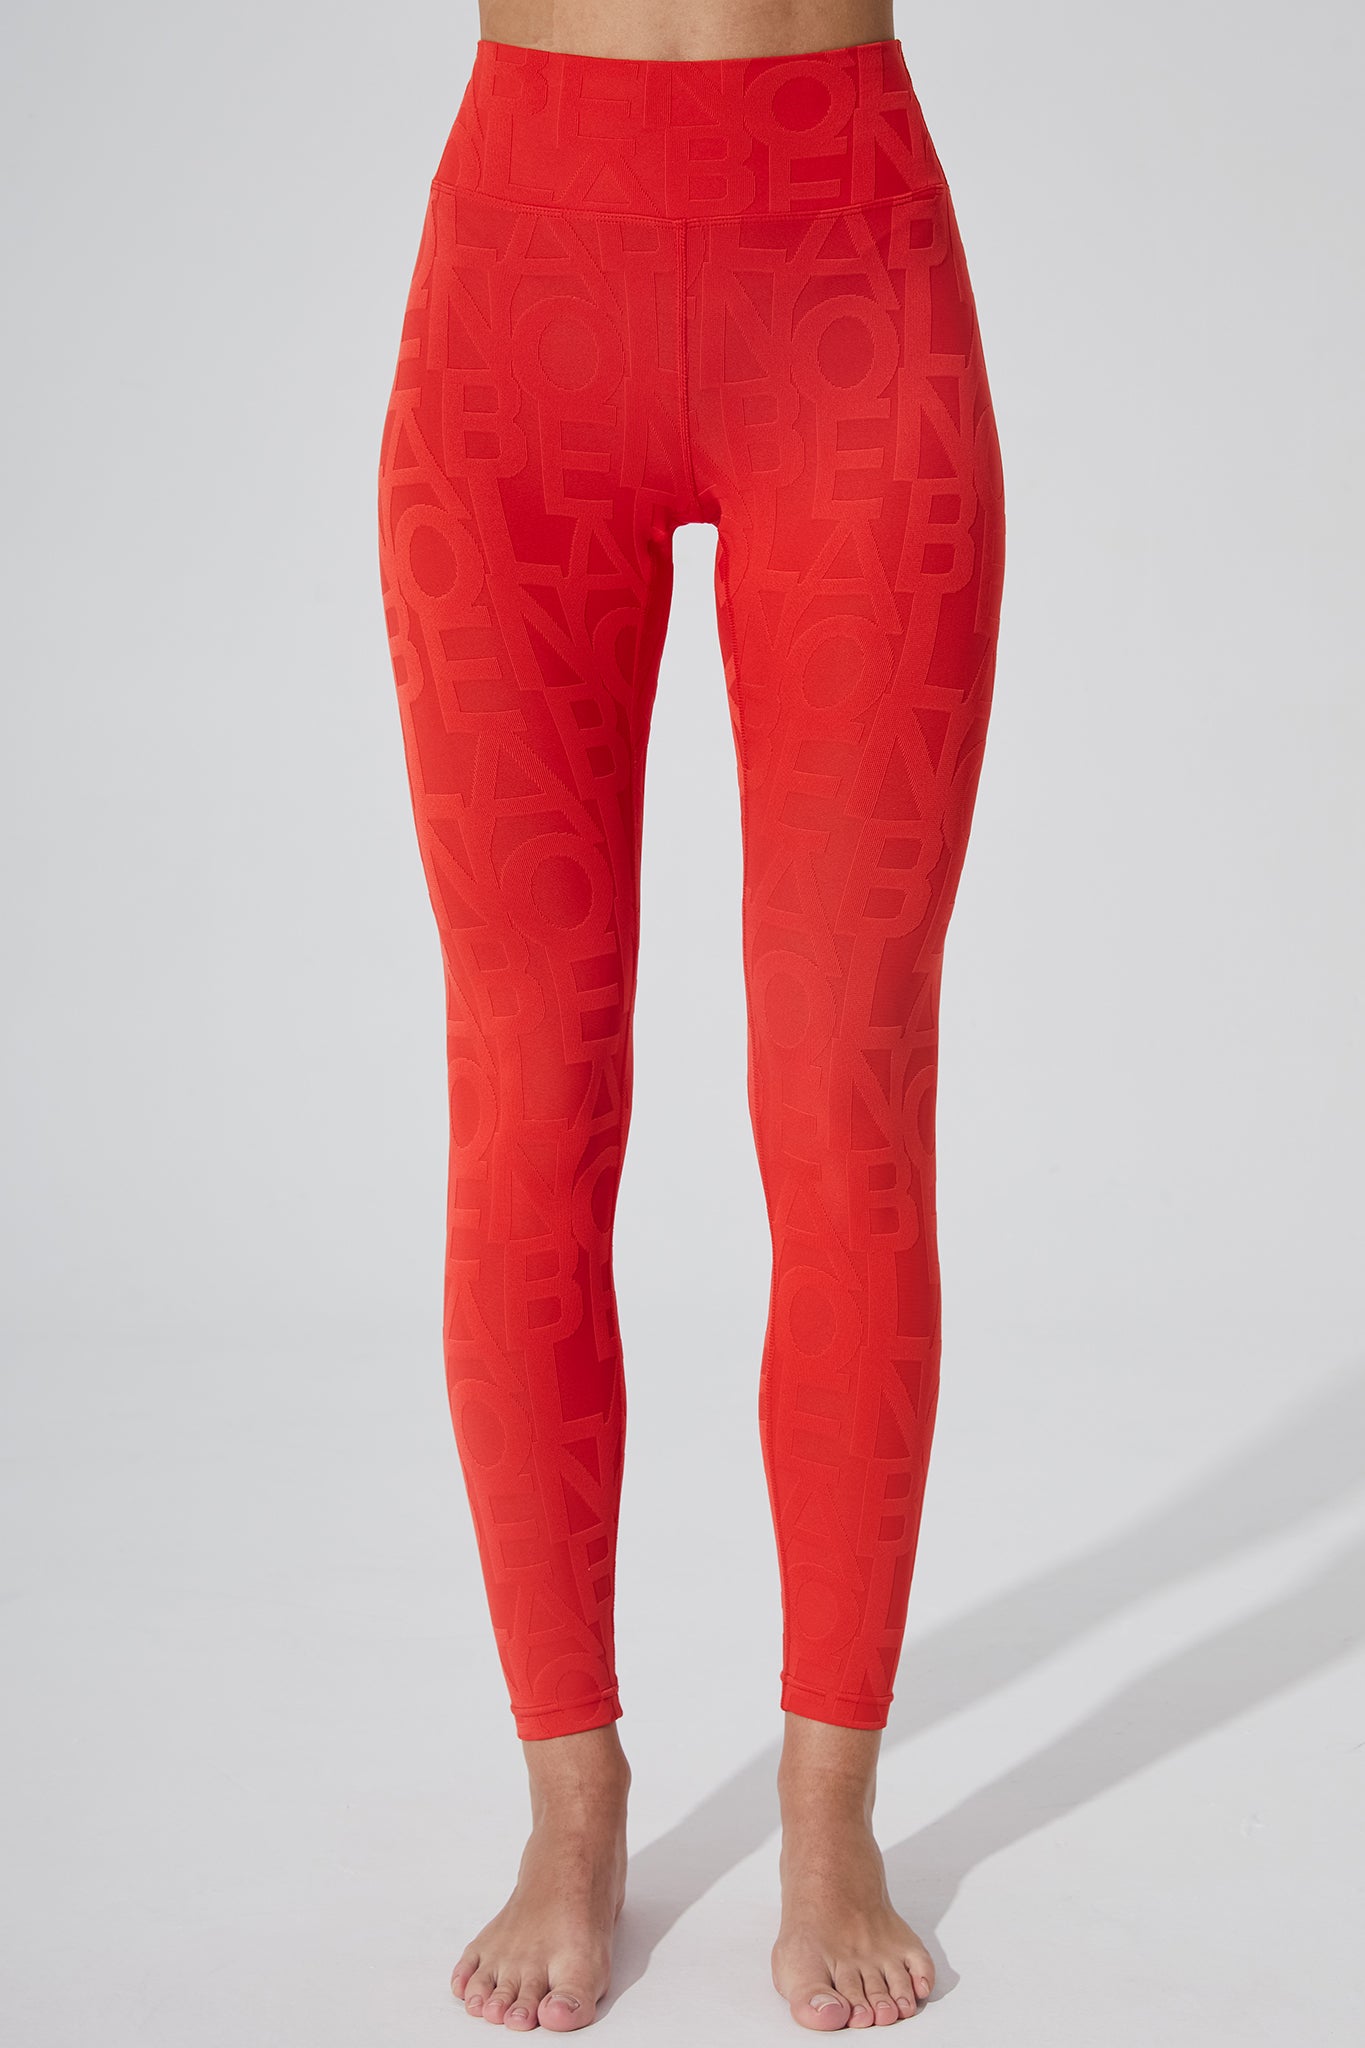 Haute red women's leggings with a 3D fleur pattern.